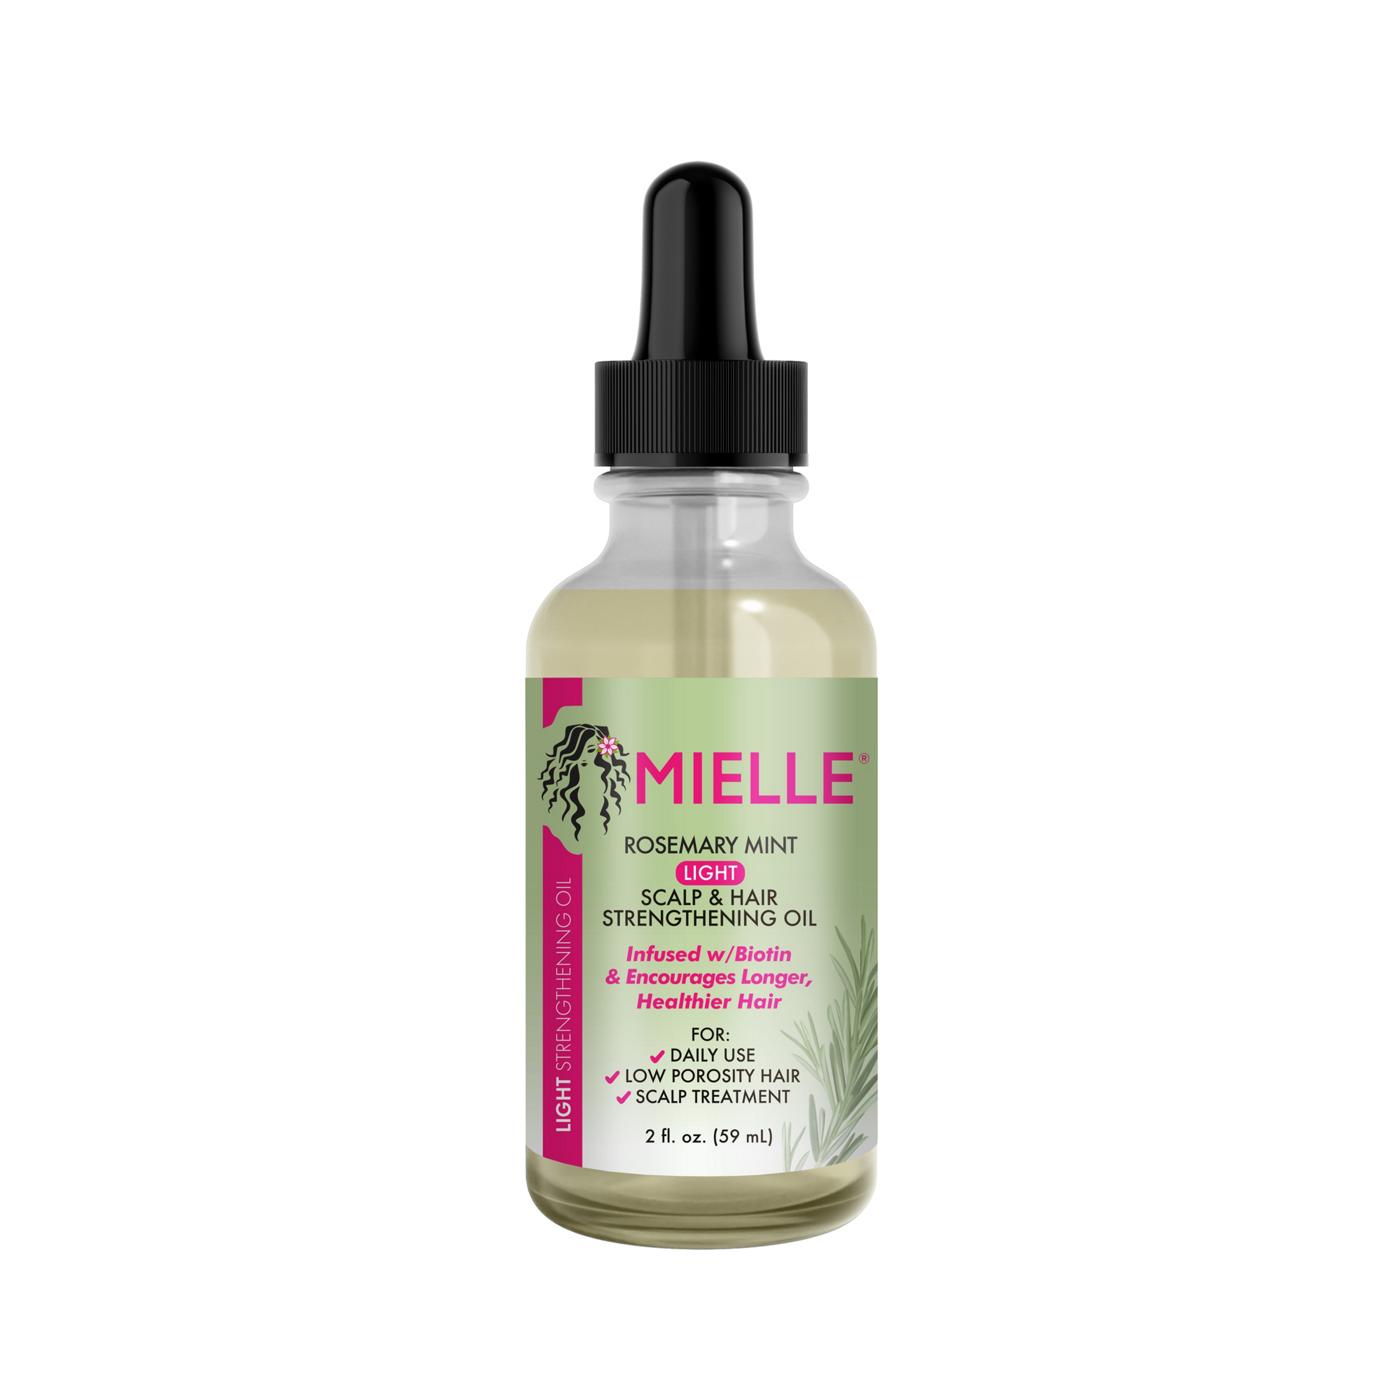 Mielle Light Scalp & Hair Strengthening Oil - Rosemary Mint; image 1 of 3